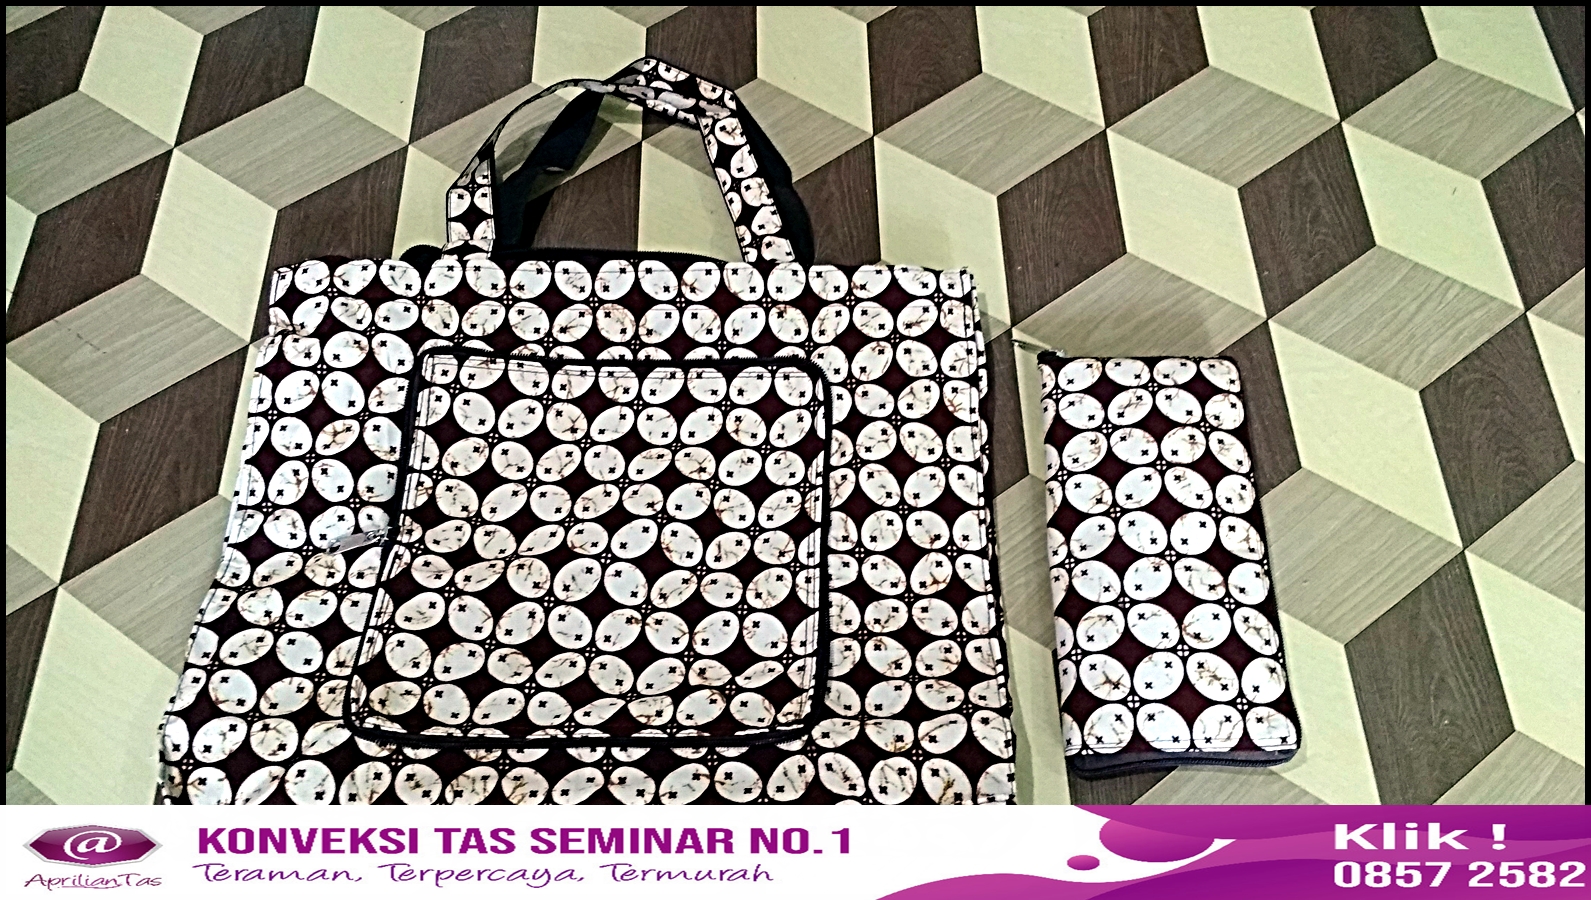 
Isi Paket Seminar Kit Murah, Pesan di Jual Tas Souvenir Bandung
 Tas untuk seminar,harga tas untuk seminar kit,model tas untuk seminar,harga tas untuk seminar,